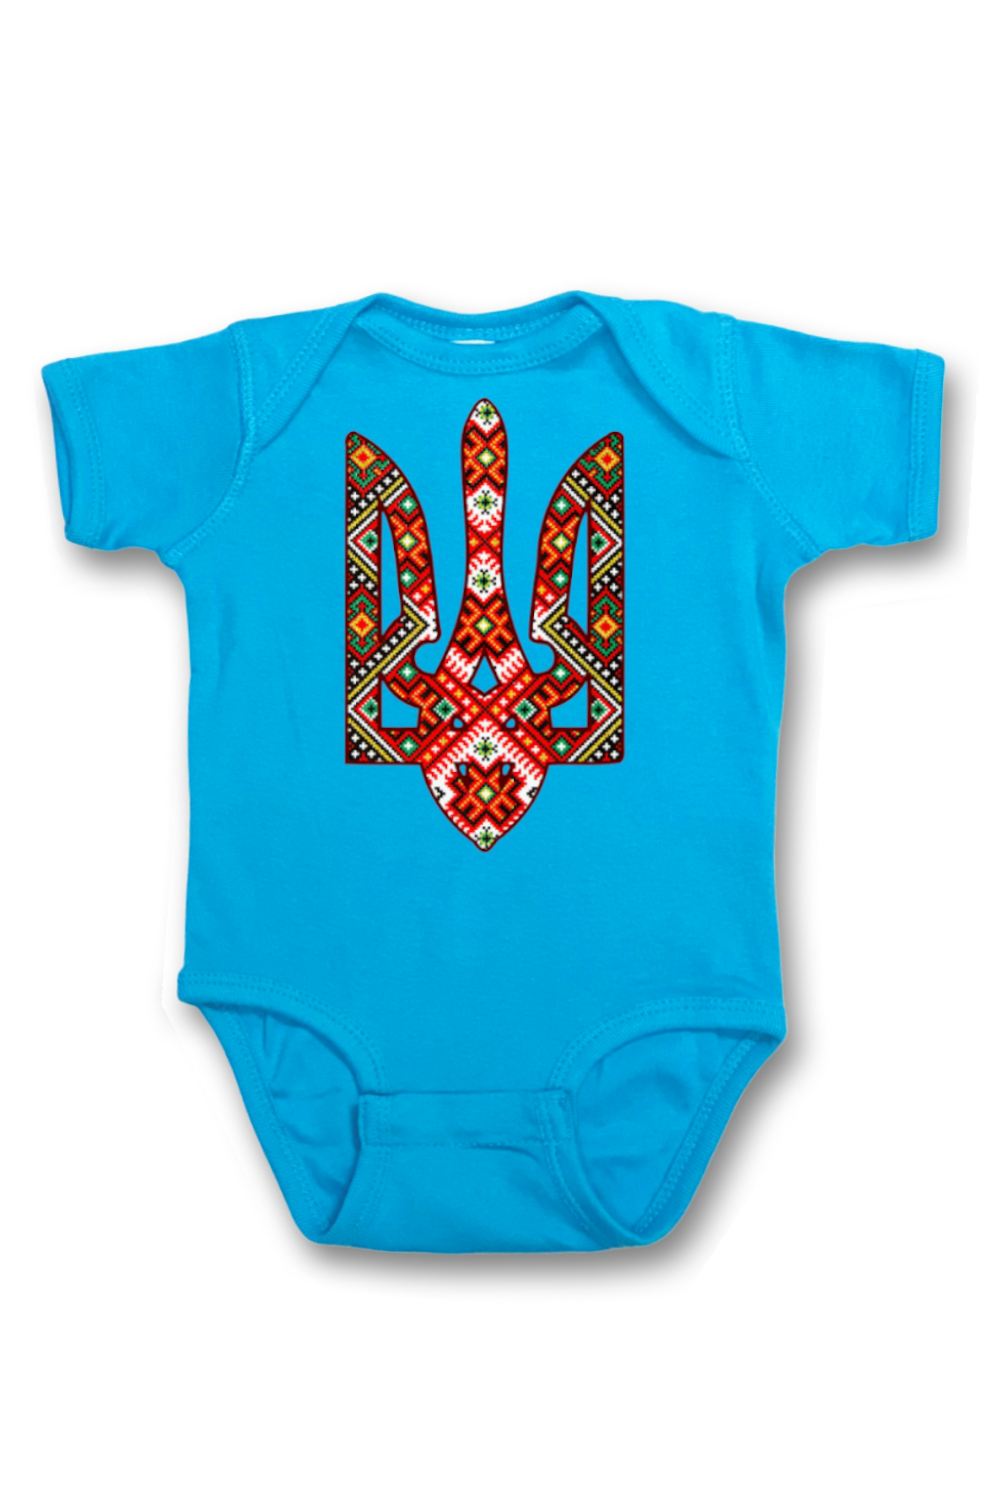 Infant onesie bodysuit "Etno Truzyb"